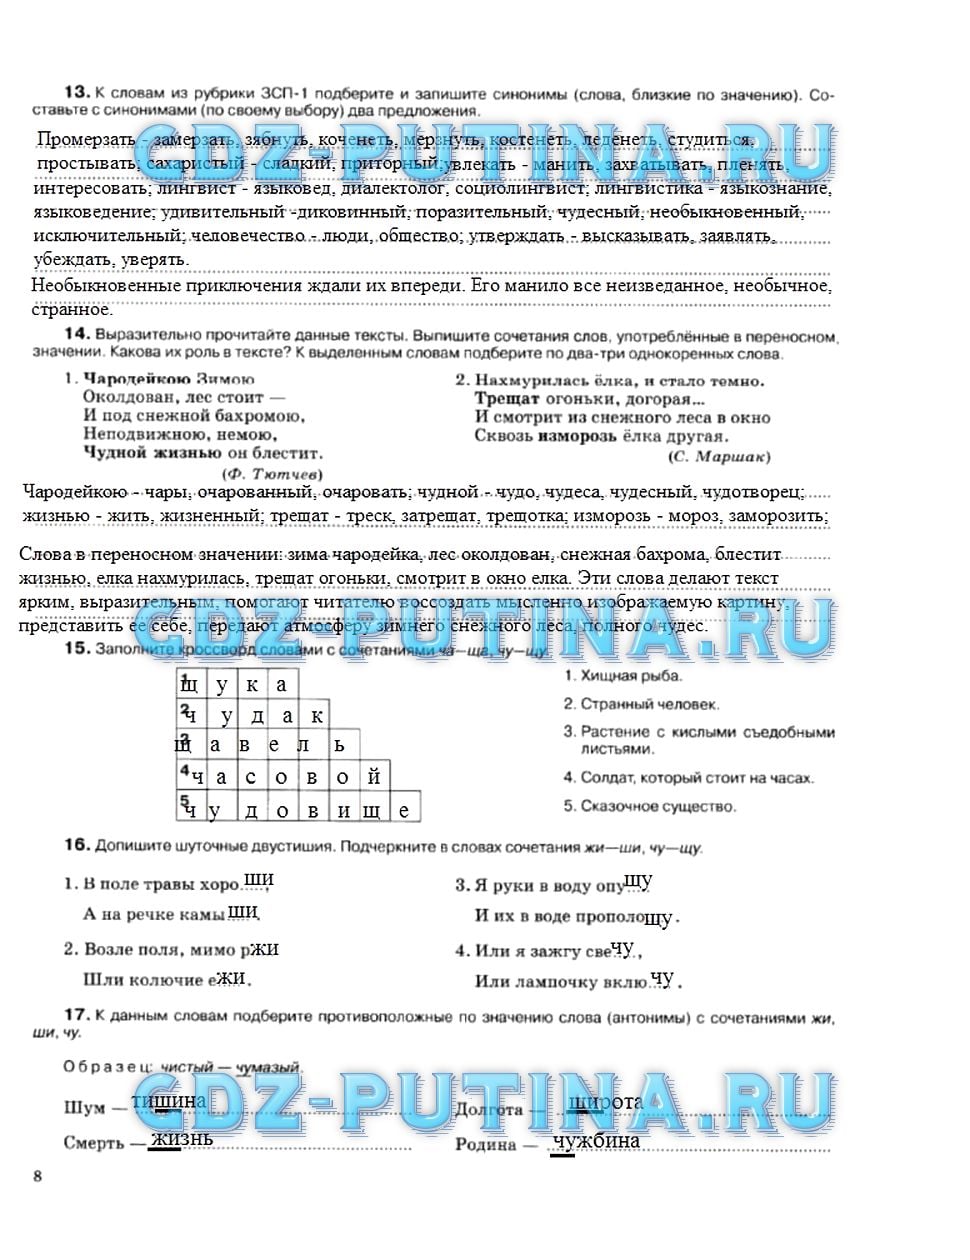 гдз 5 класс рабочая тетрадь страница 8 русский язык Ларионова